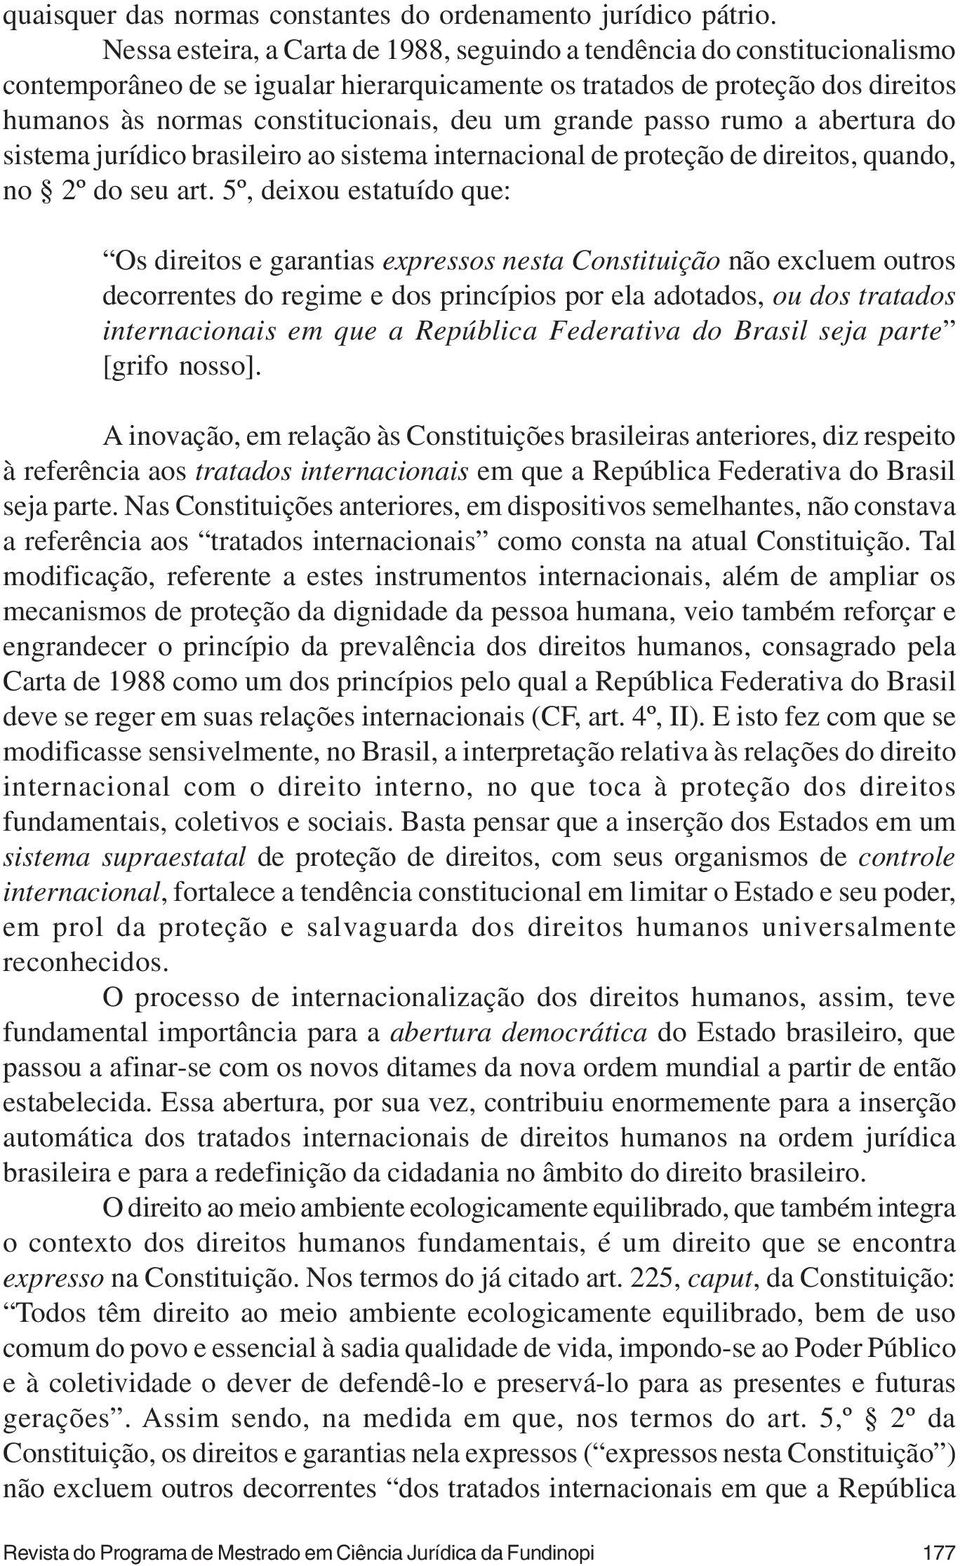 grande passo rumo a abertura do sistema jurídico brasileiro ao sistema internacional de proteção de direitos, quando, no 2º do seu art.